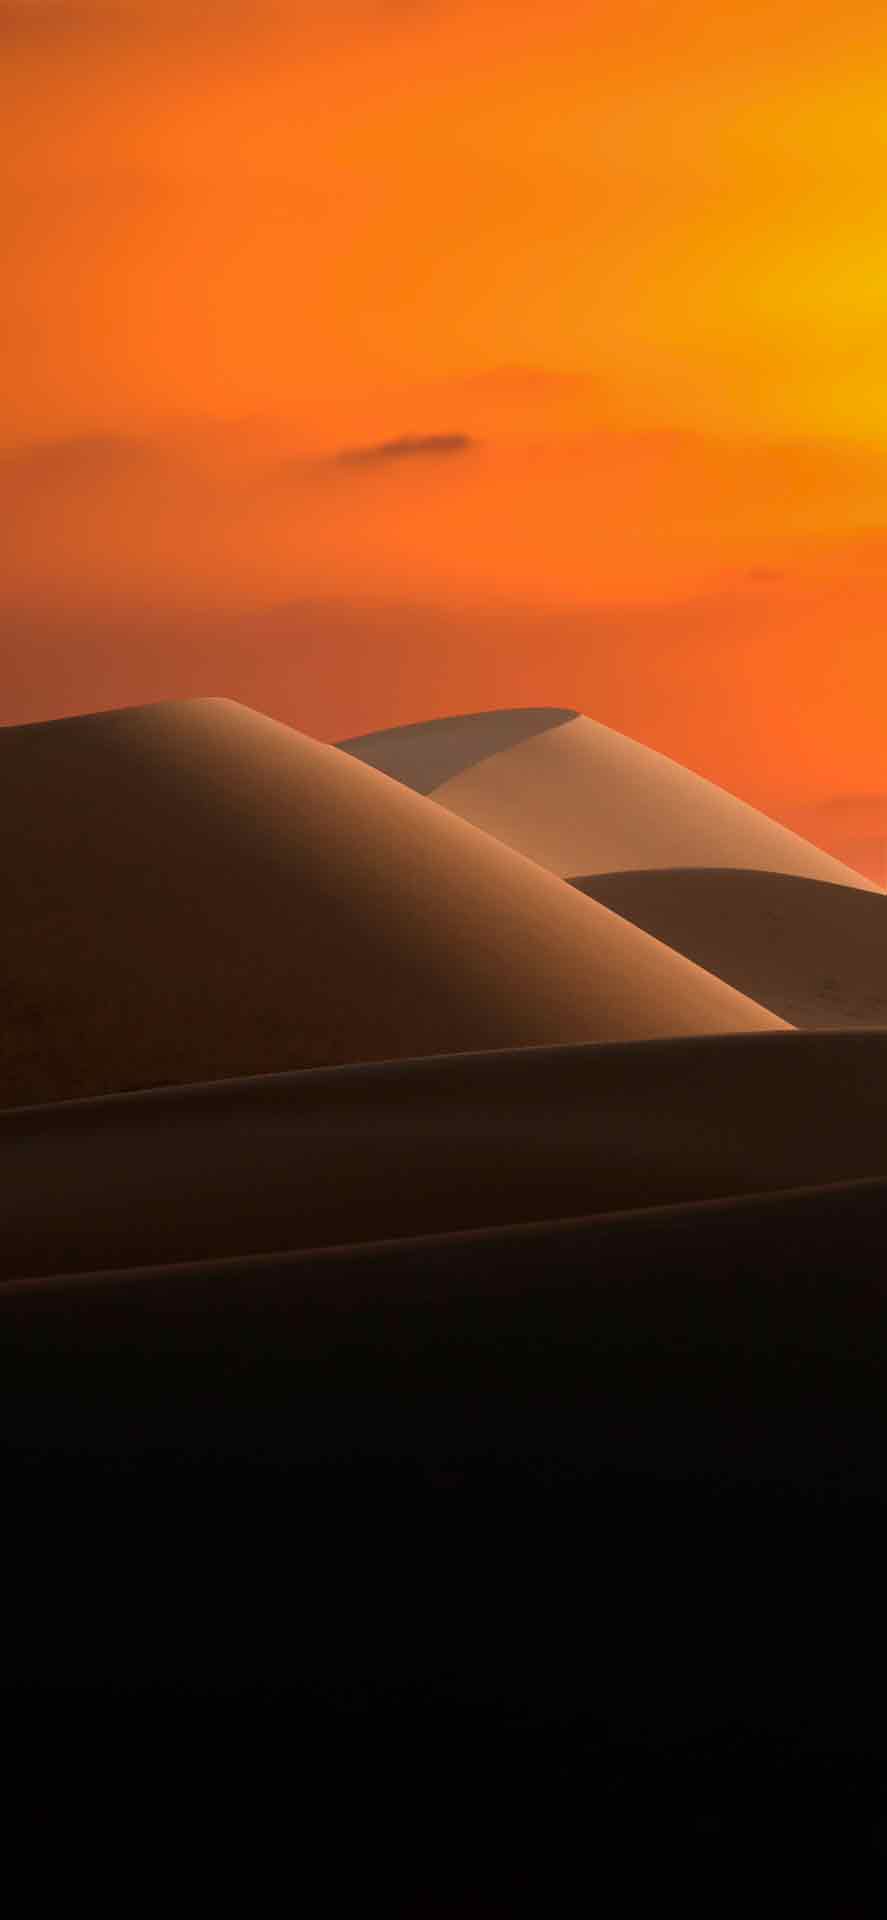 沙漠沙丘与渐变的天空 iPhone 壁纸 01